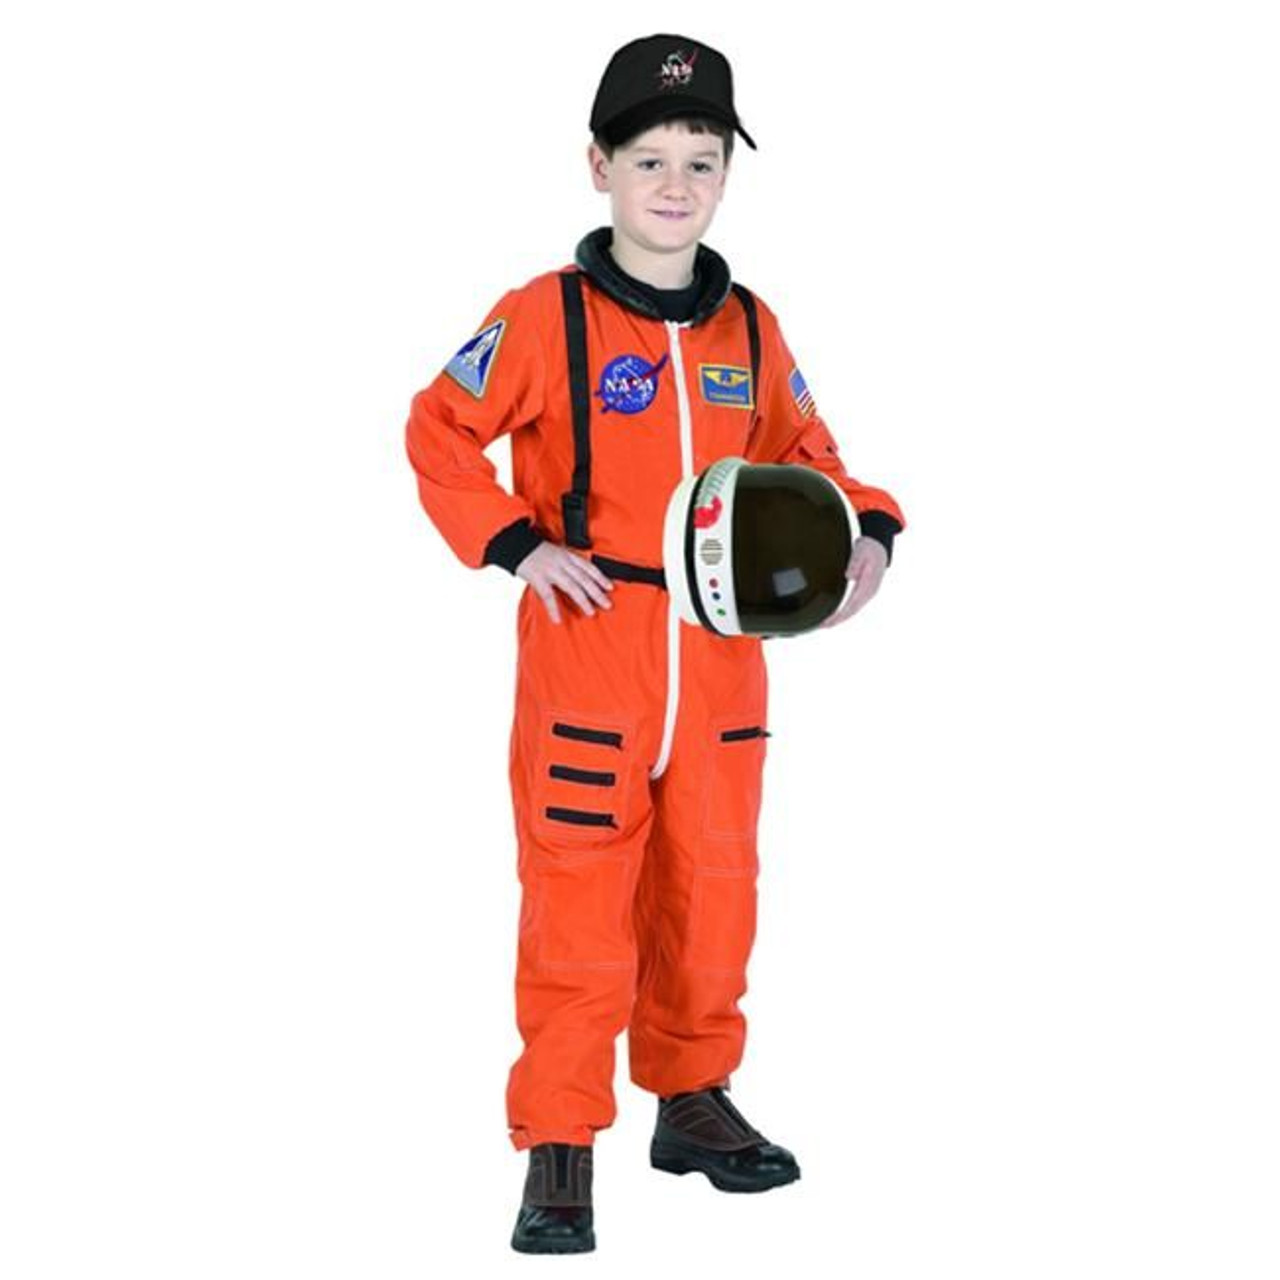 Child Astronaut Costume with Cap